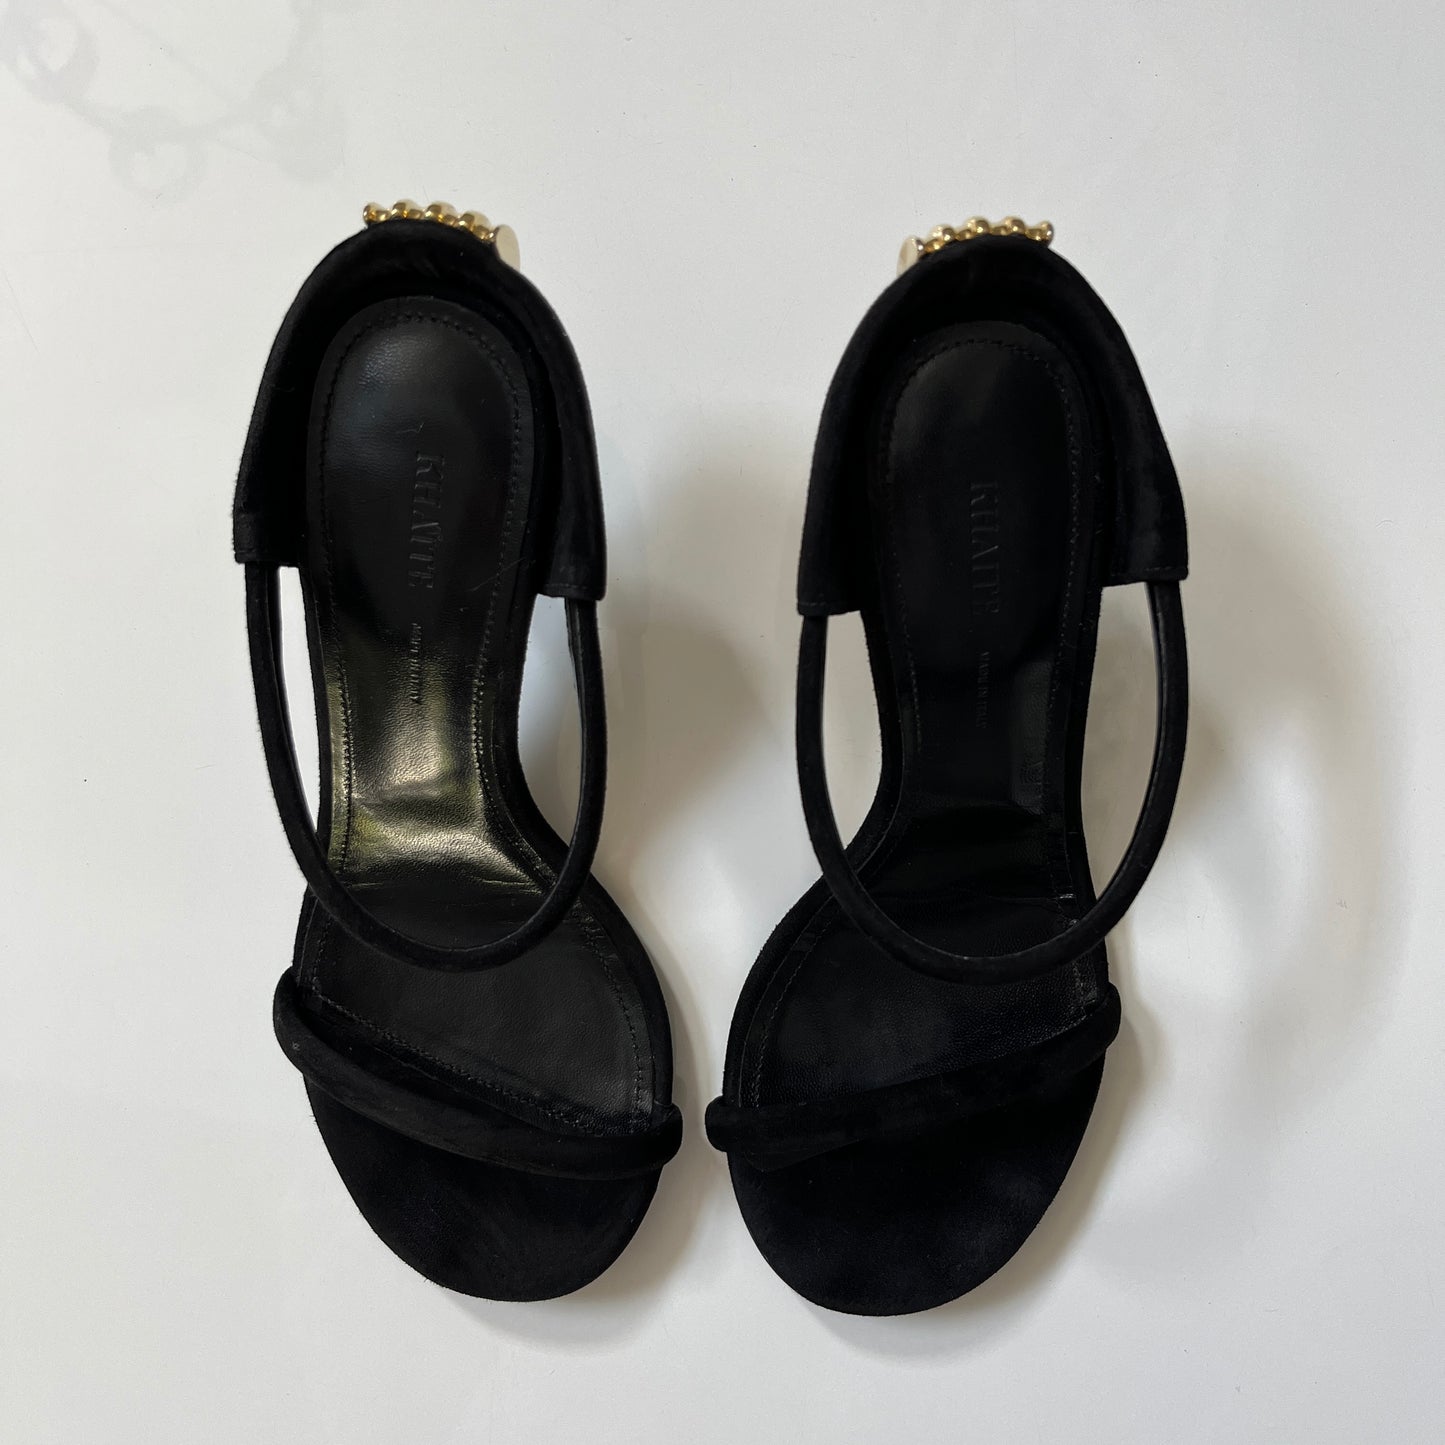 KHAITE Seigel Heel Sandal in Black